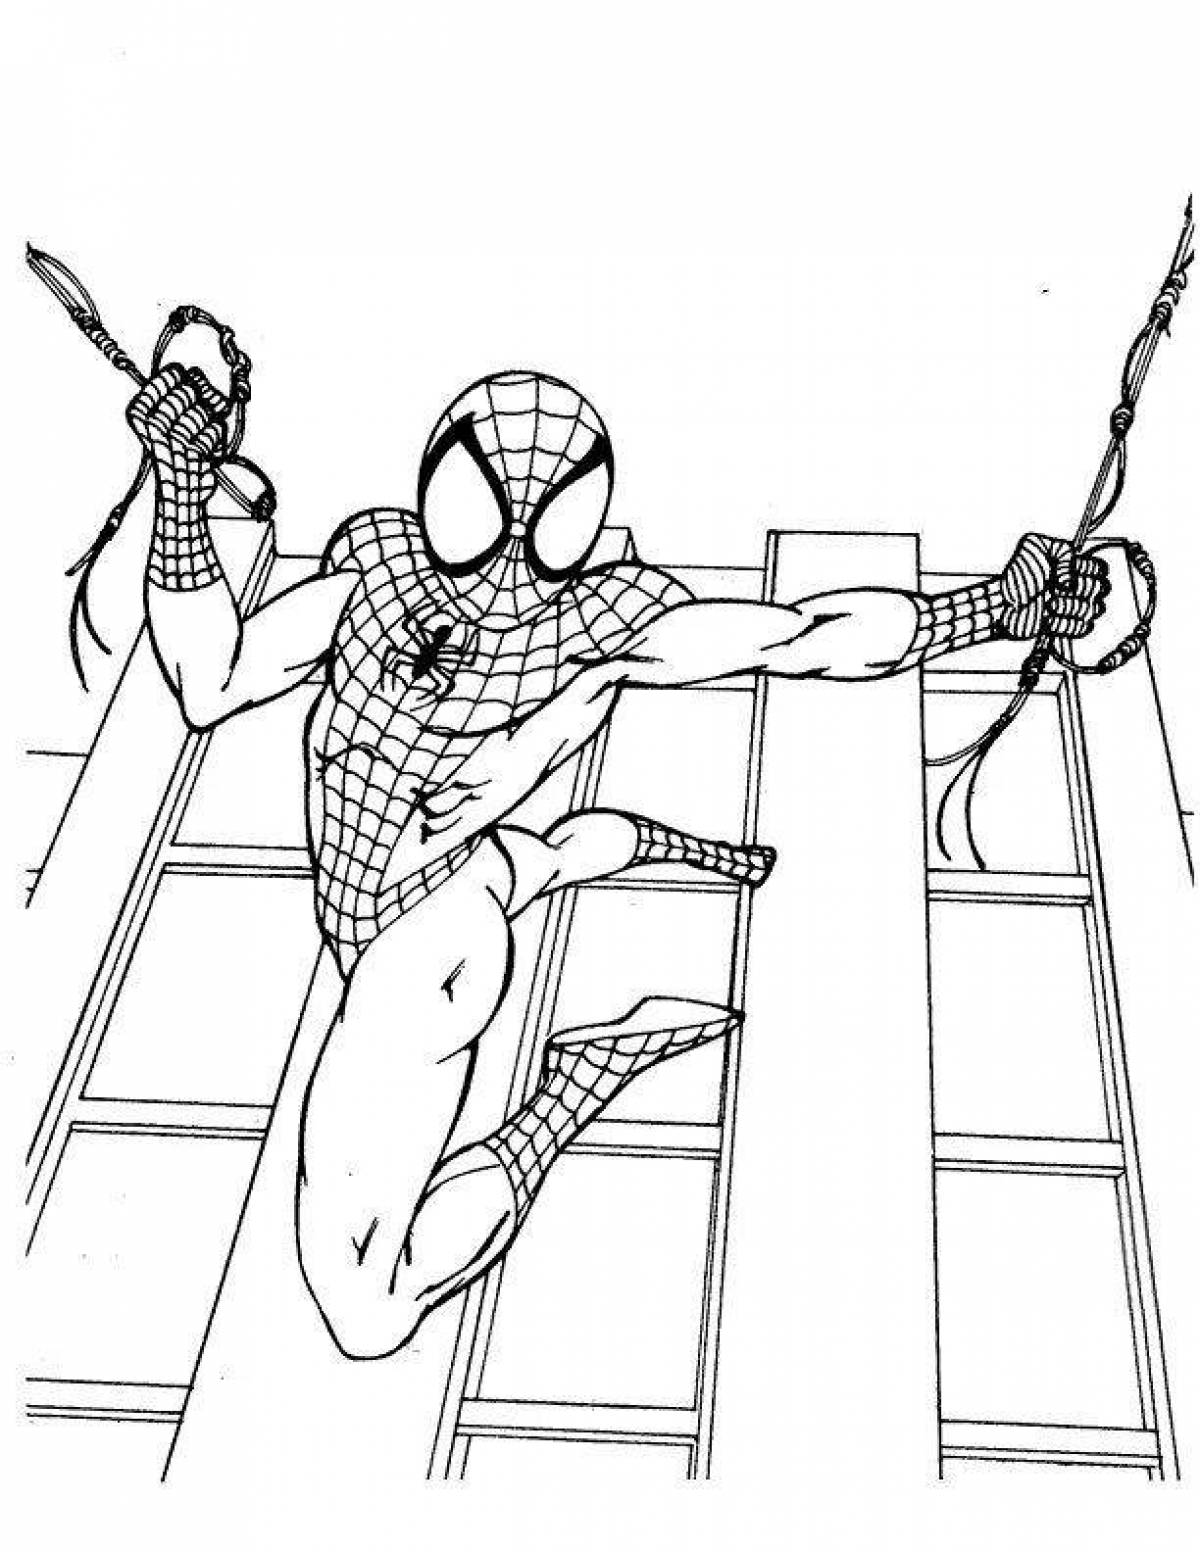 Turn on spiderman #5